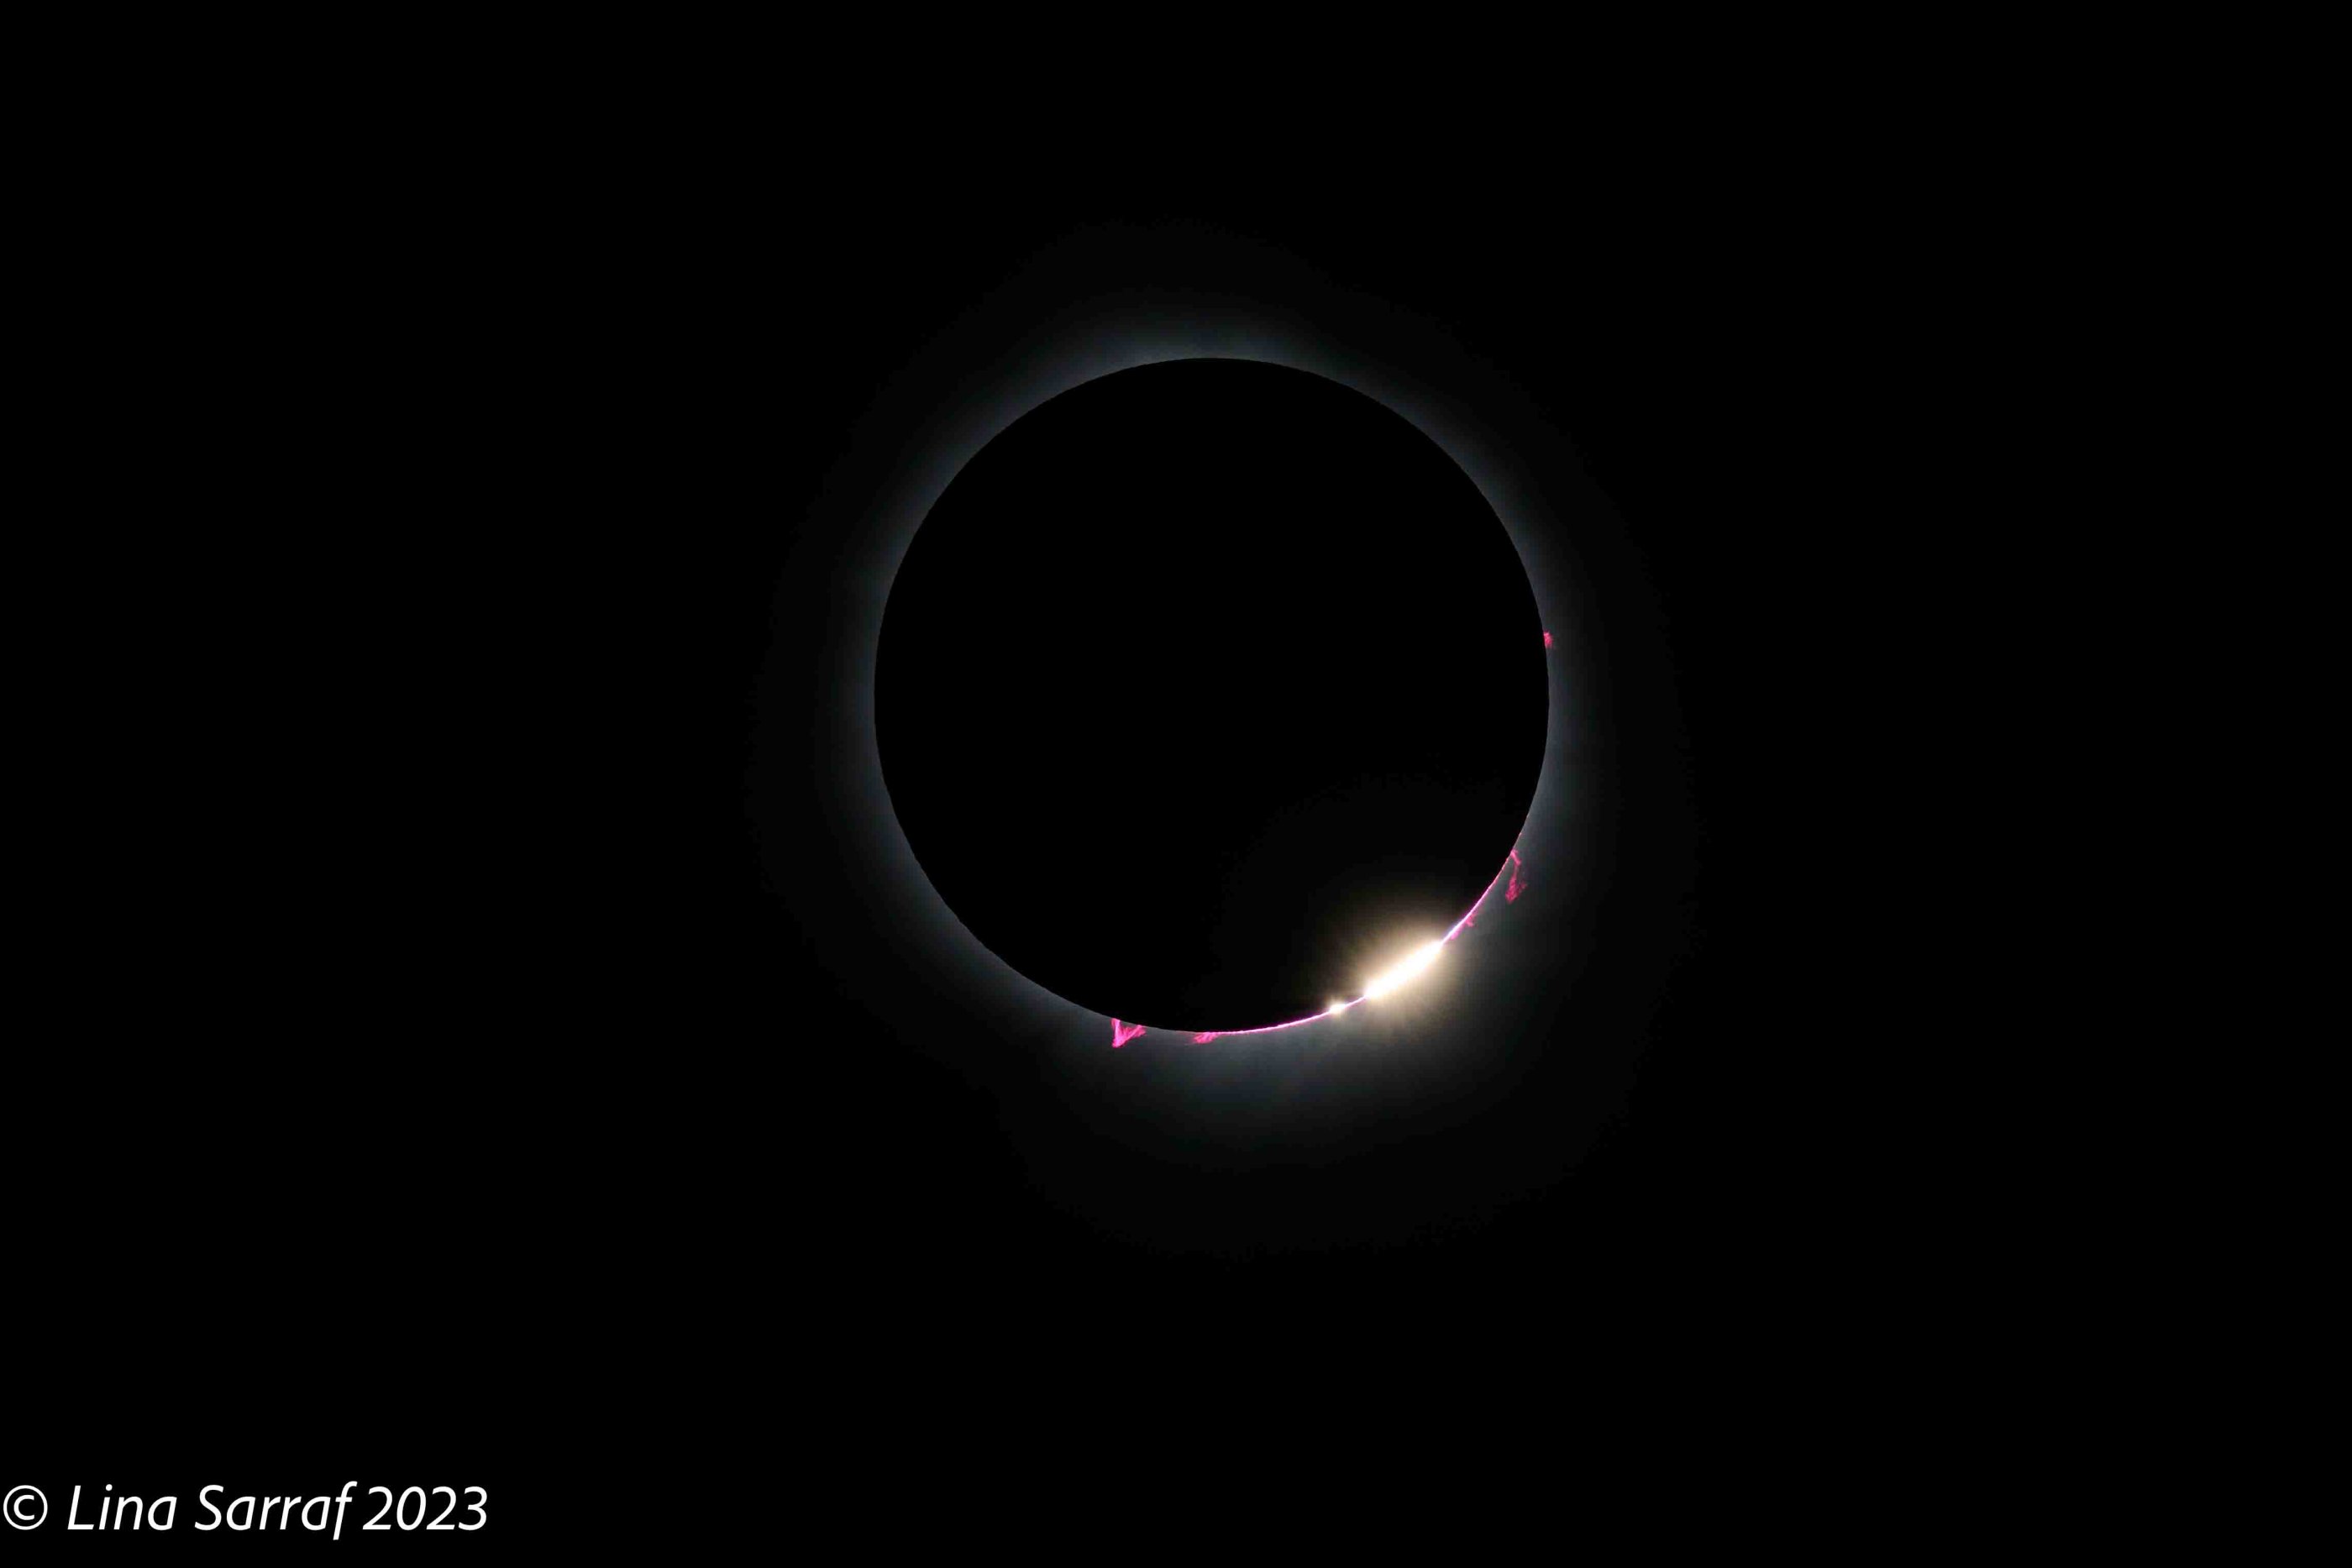  eclipse-12.jpg